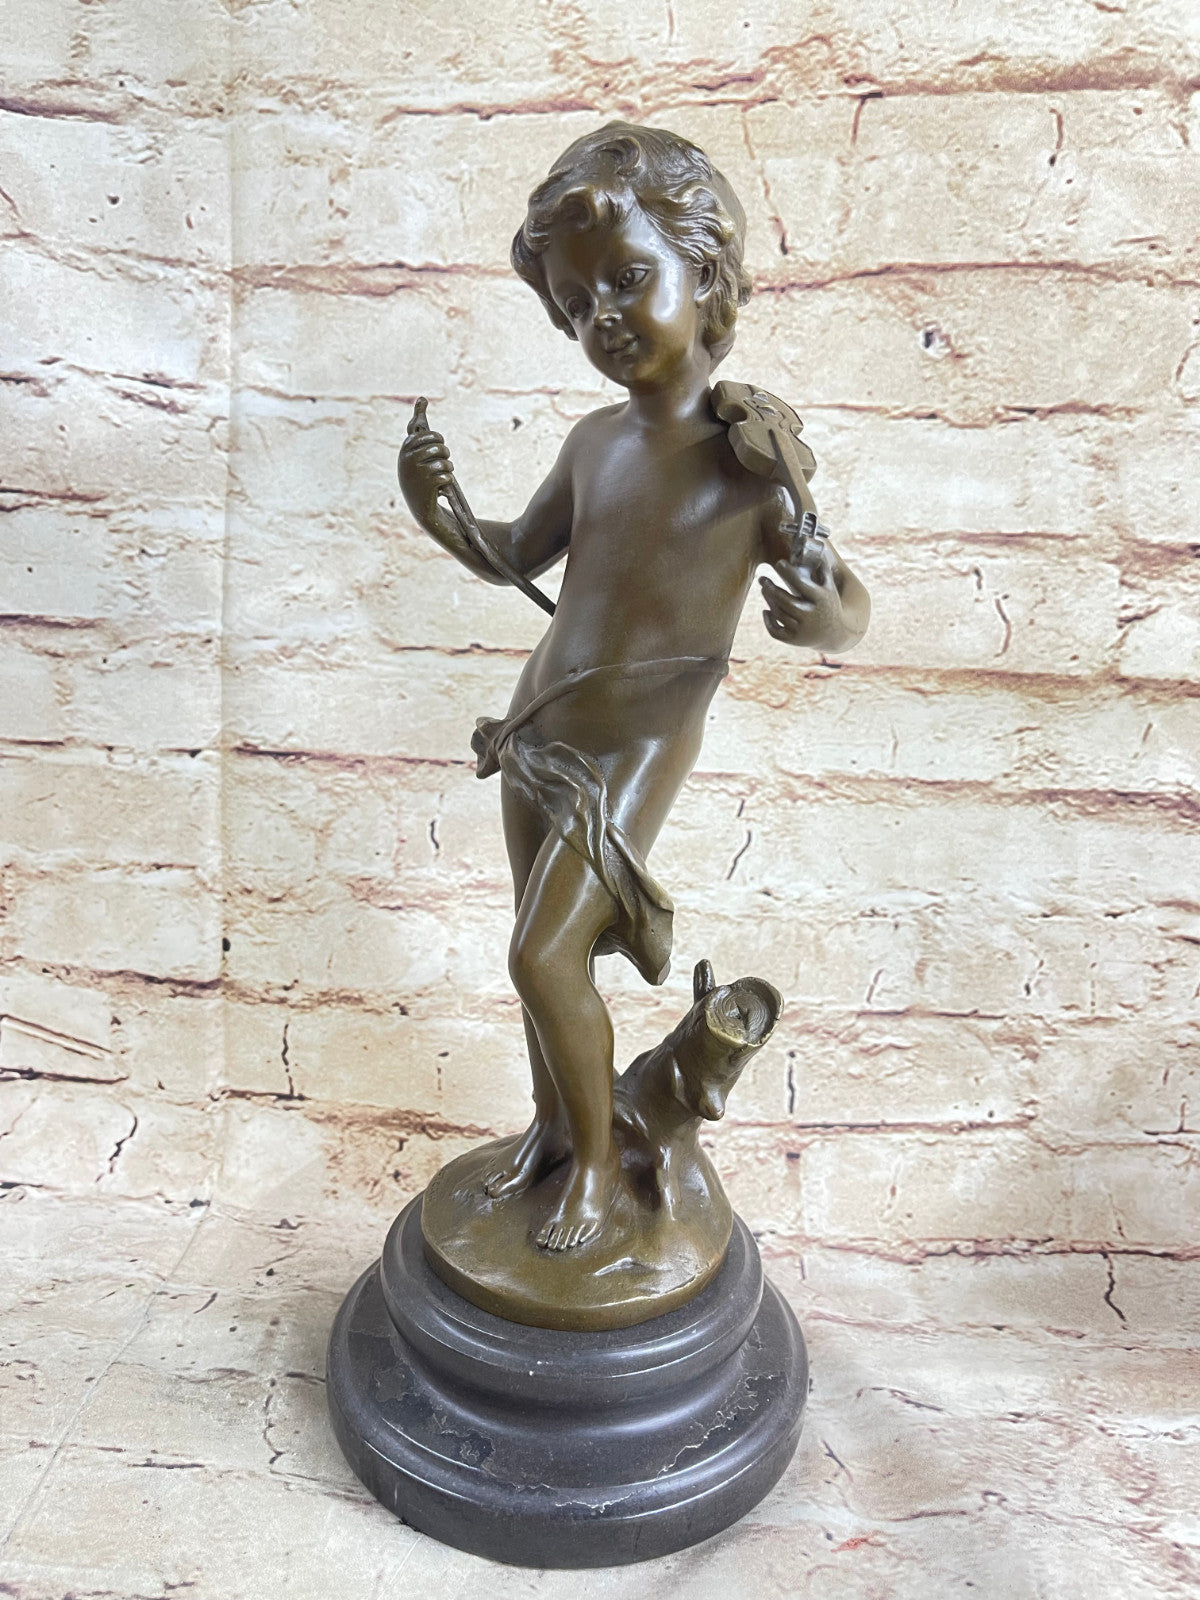 Signed Moreau Violin Player Art Deco Statue Figurine Bronze Sculpture Figure